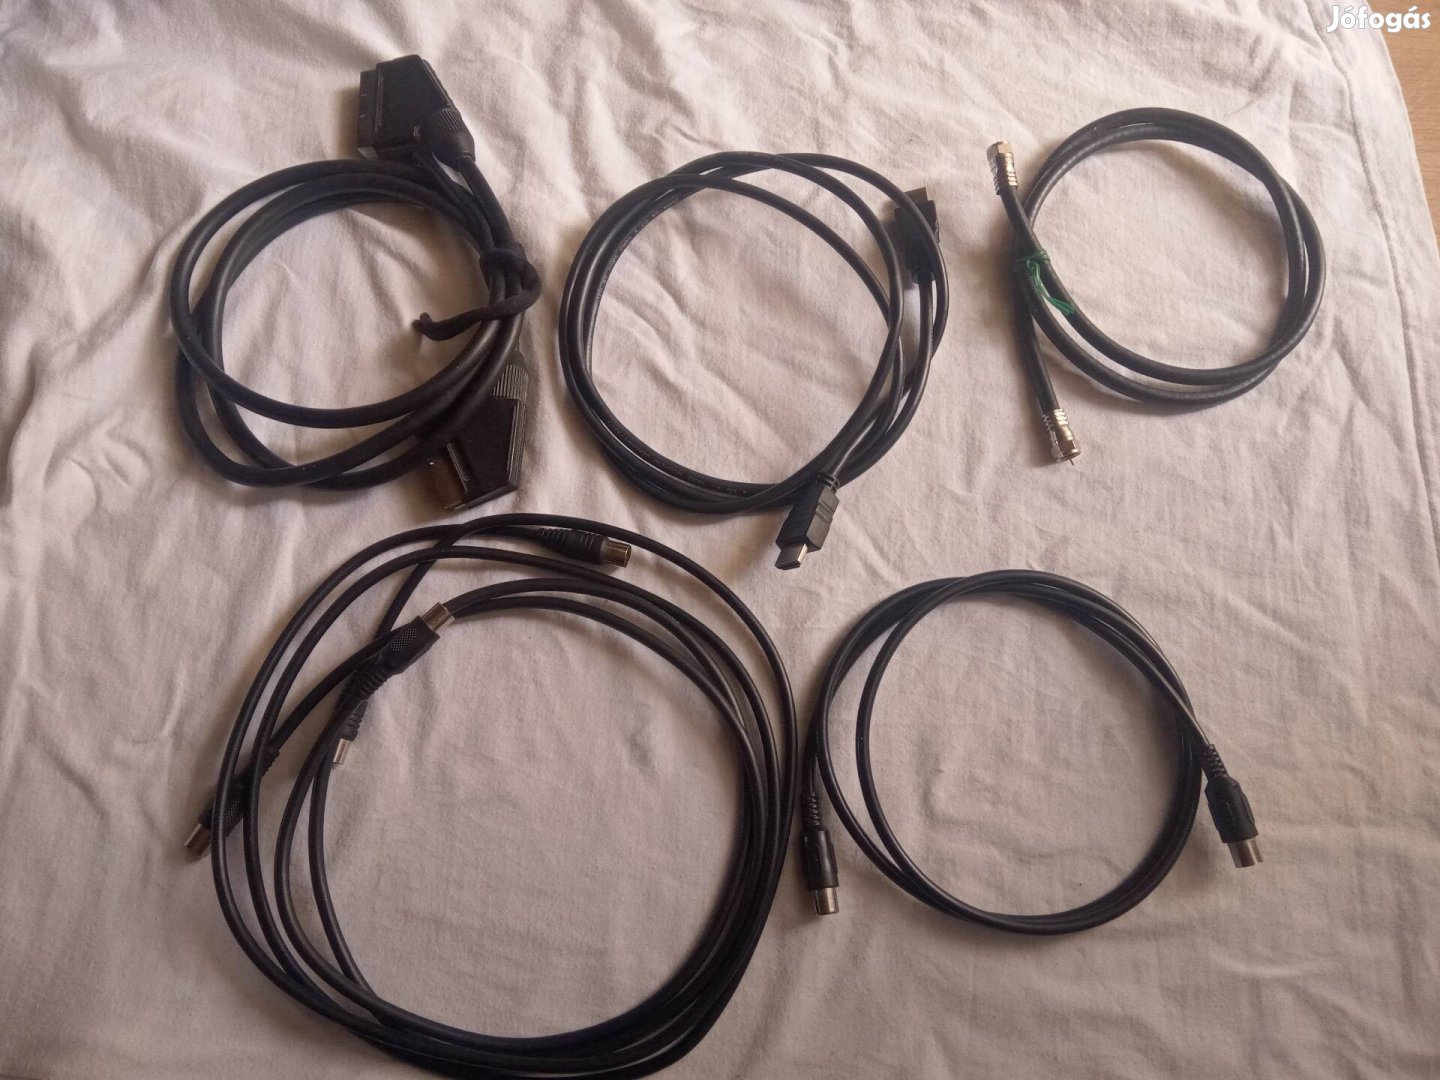 HDMI -Sacart -Coax csatlakozó kábelek 